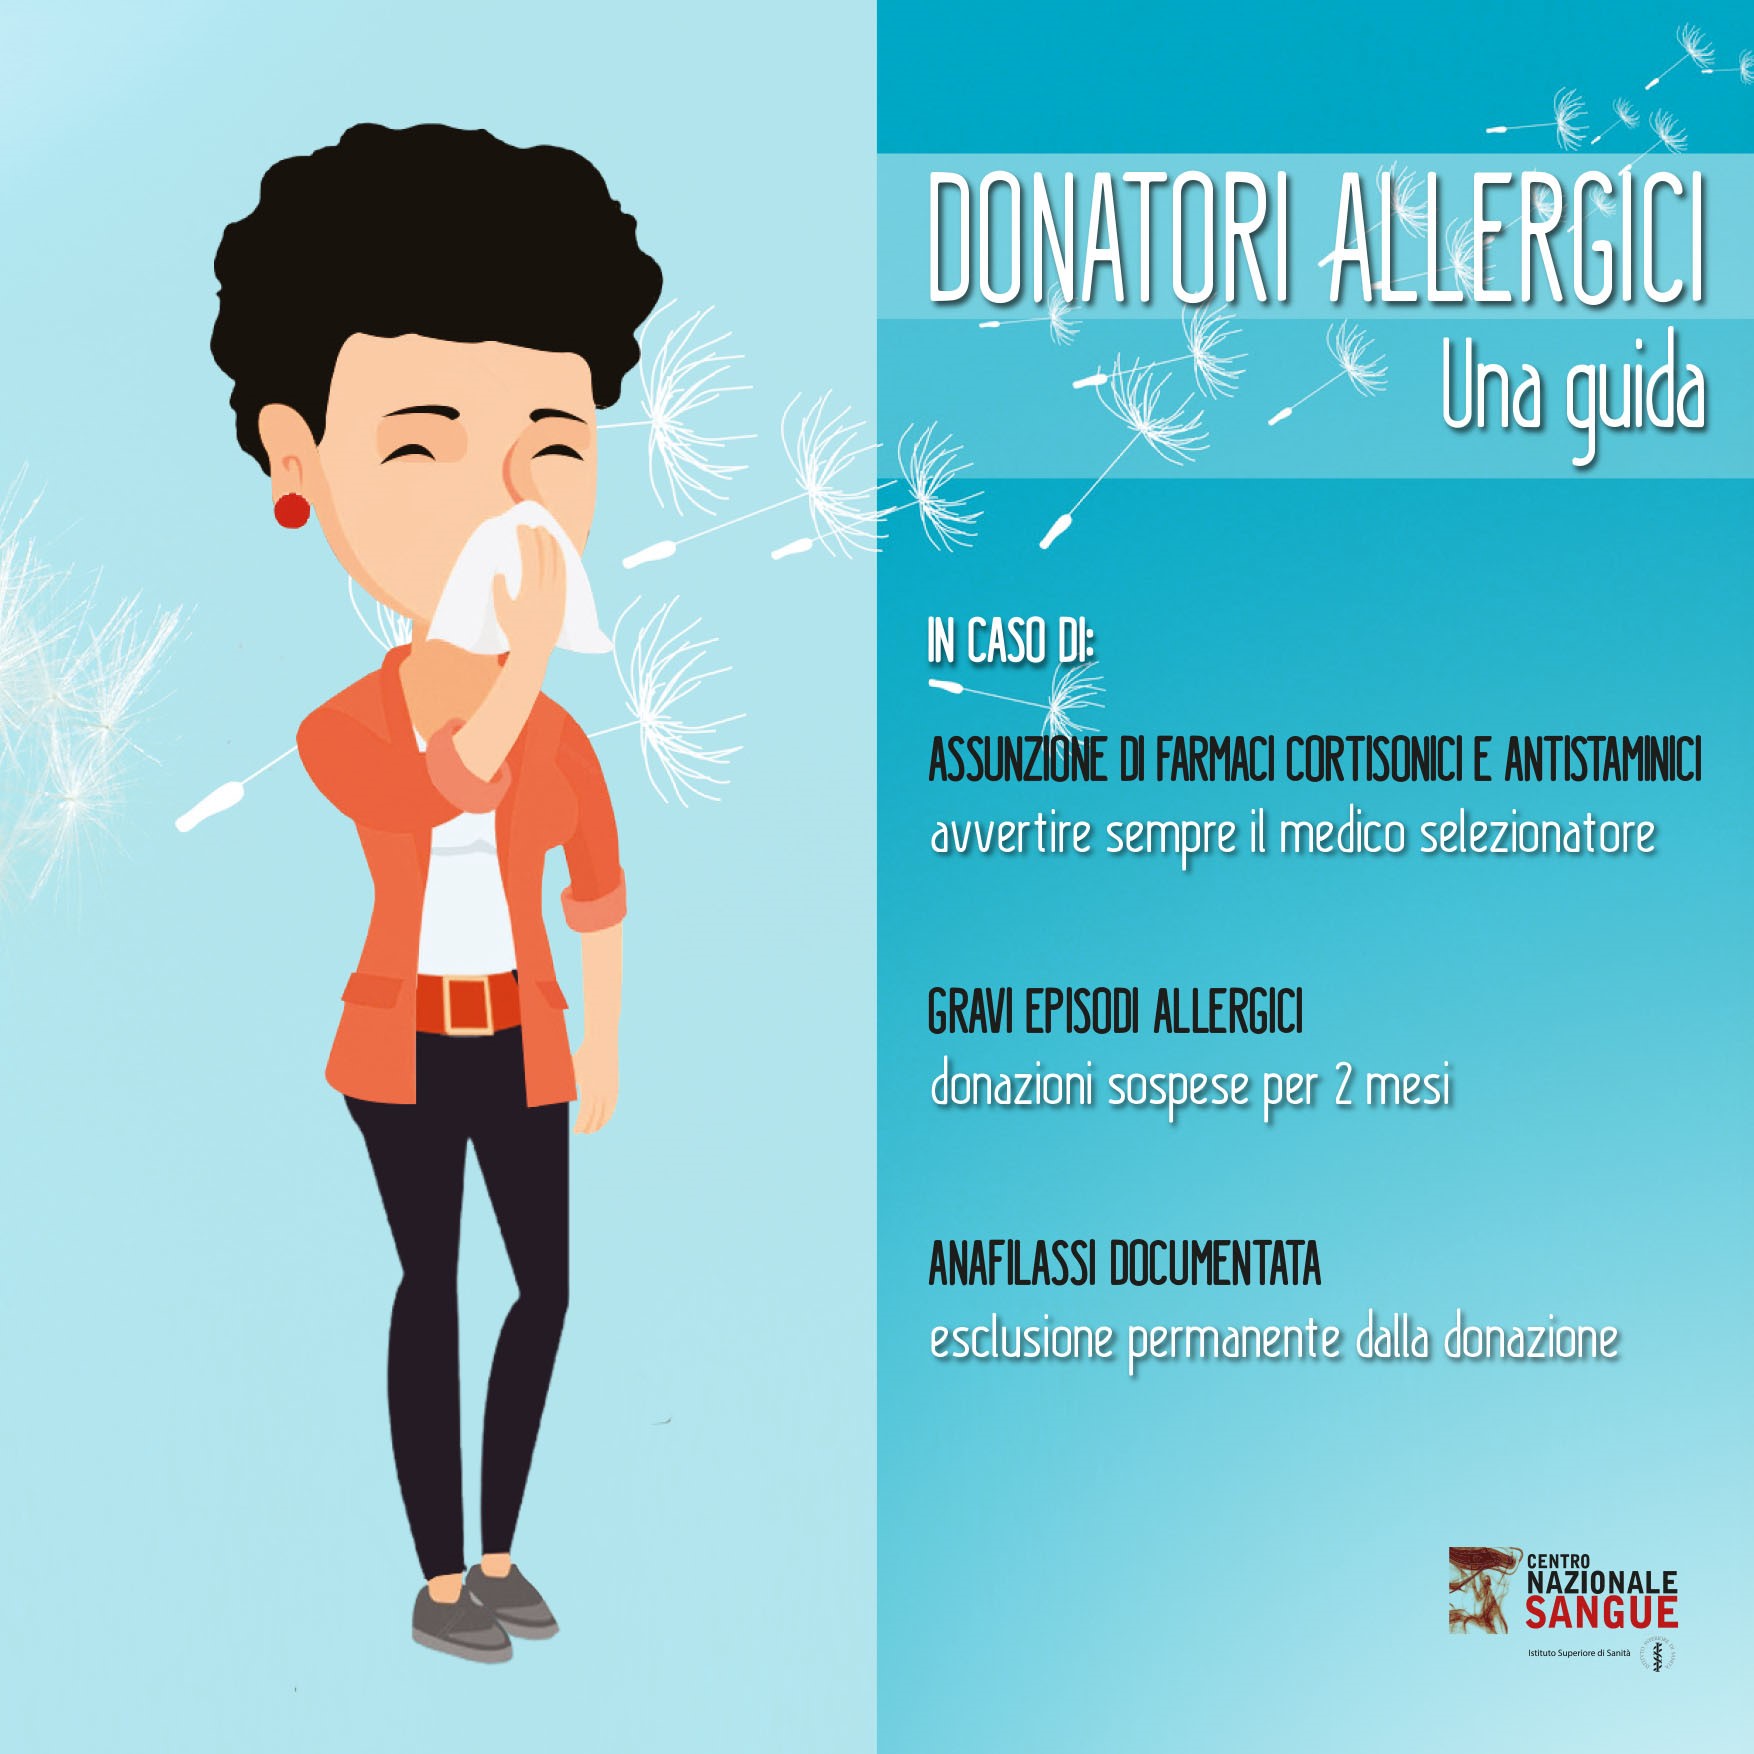 Informazioni per donatori allergici